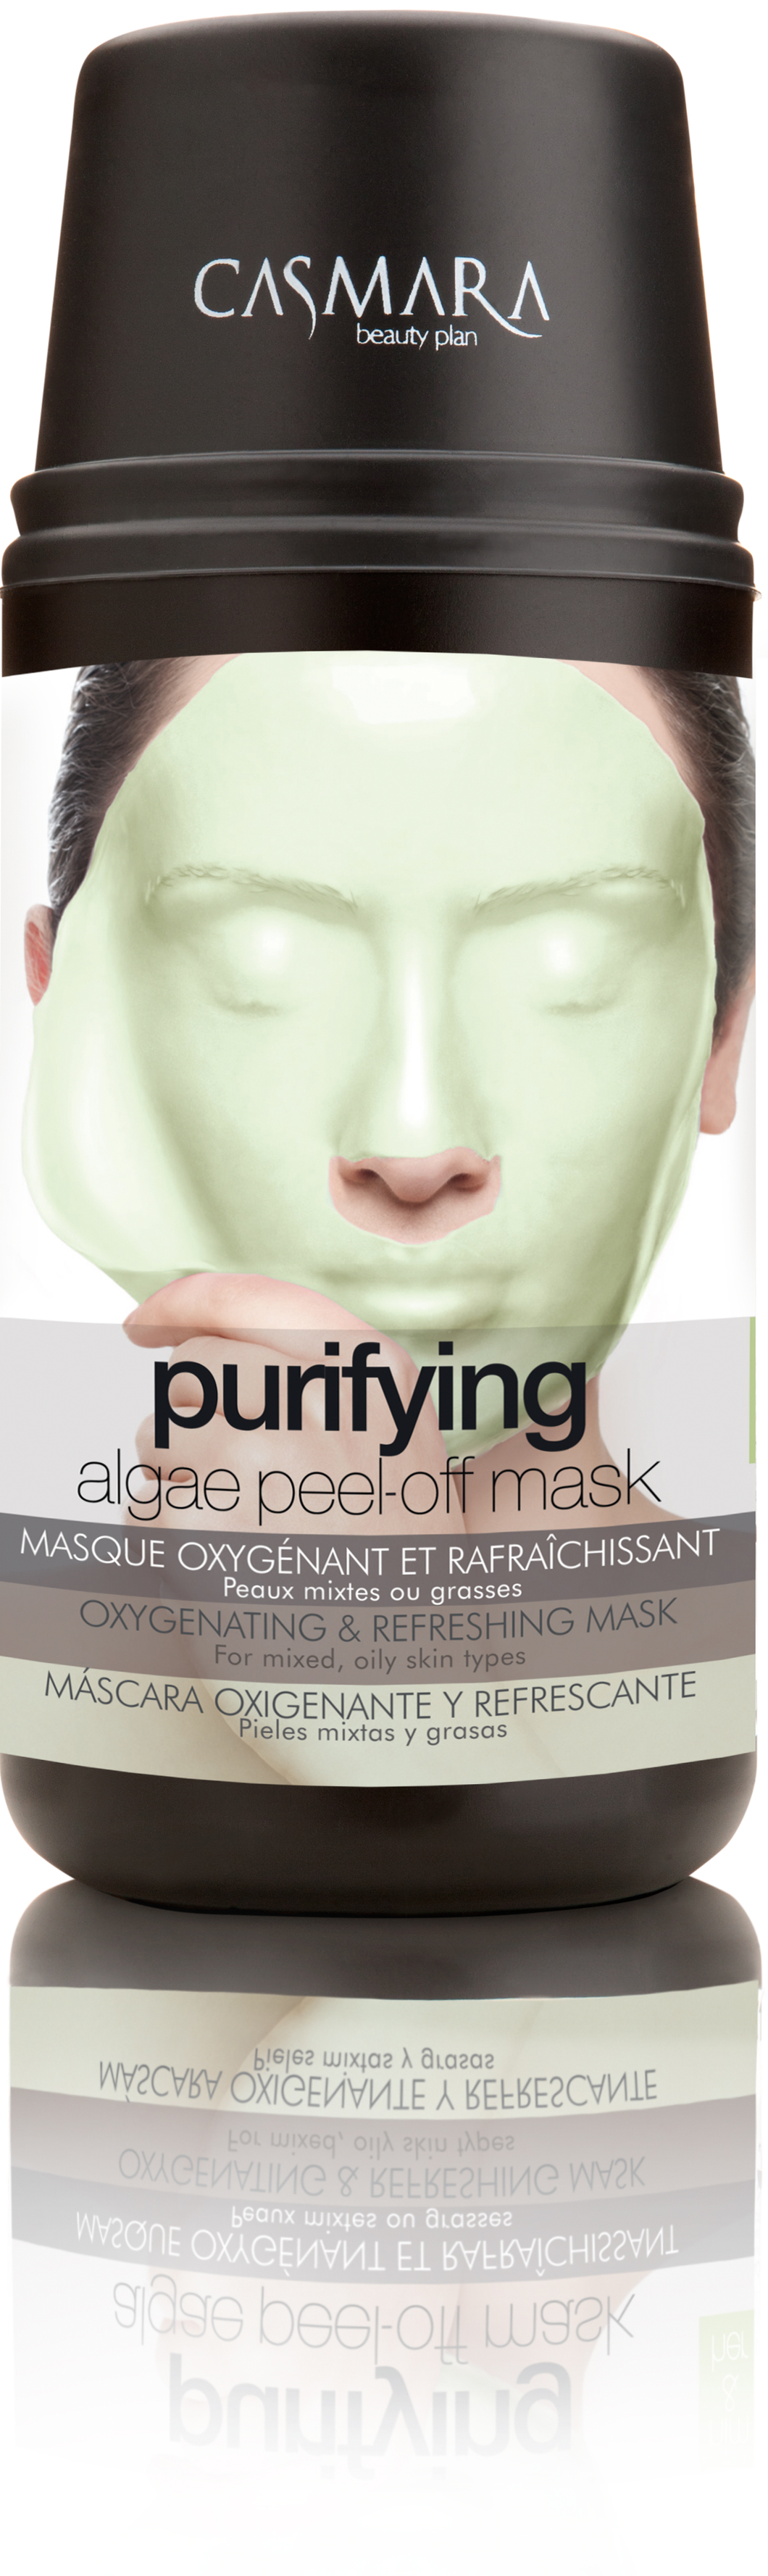 Purifying Mask Kit